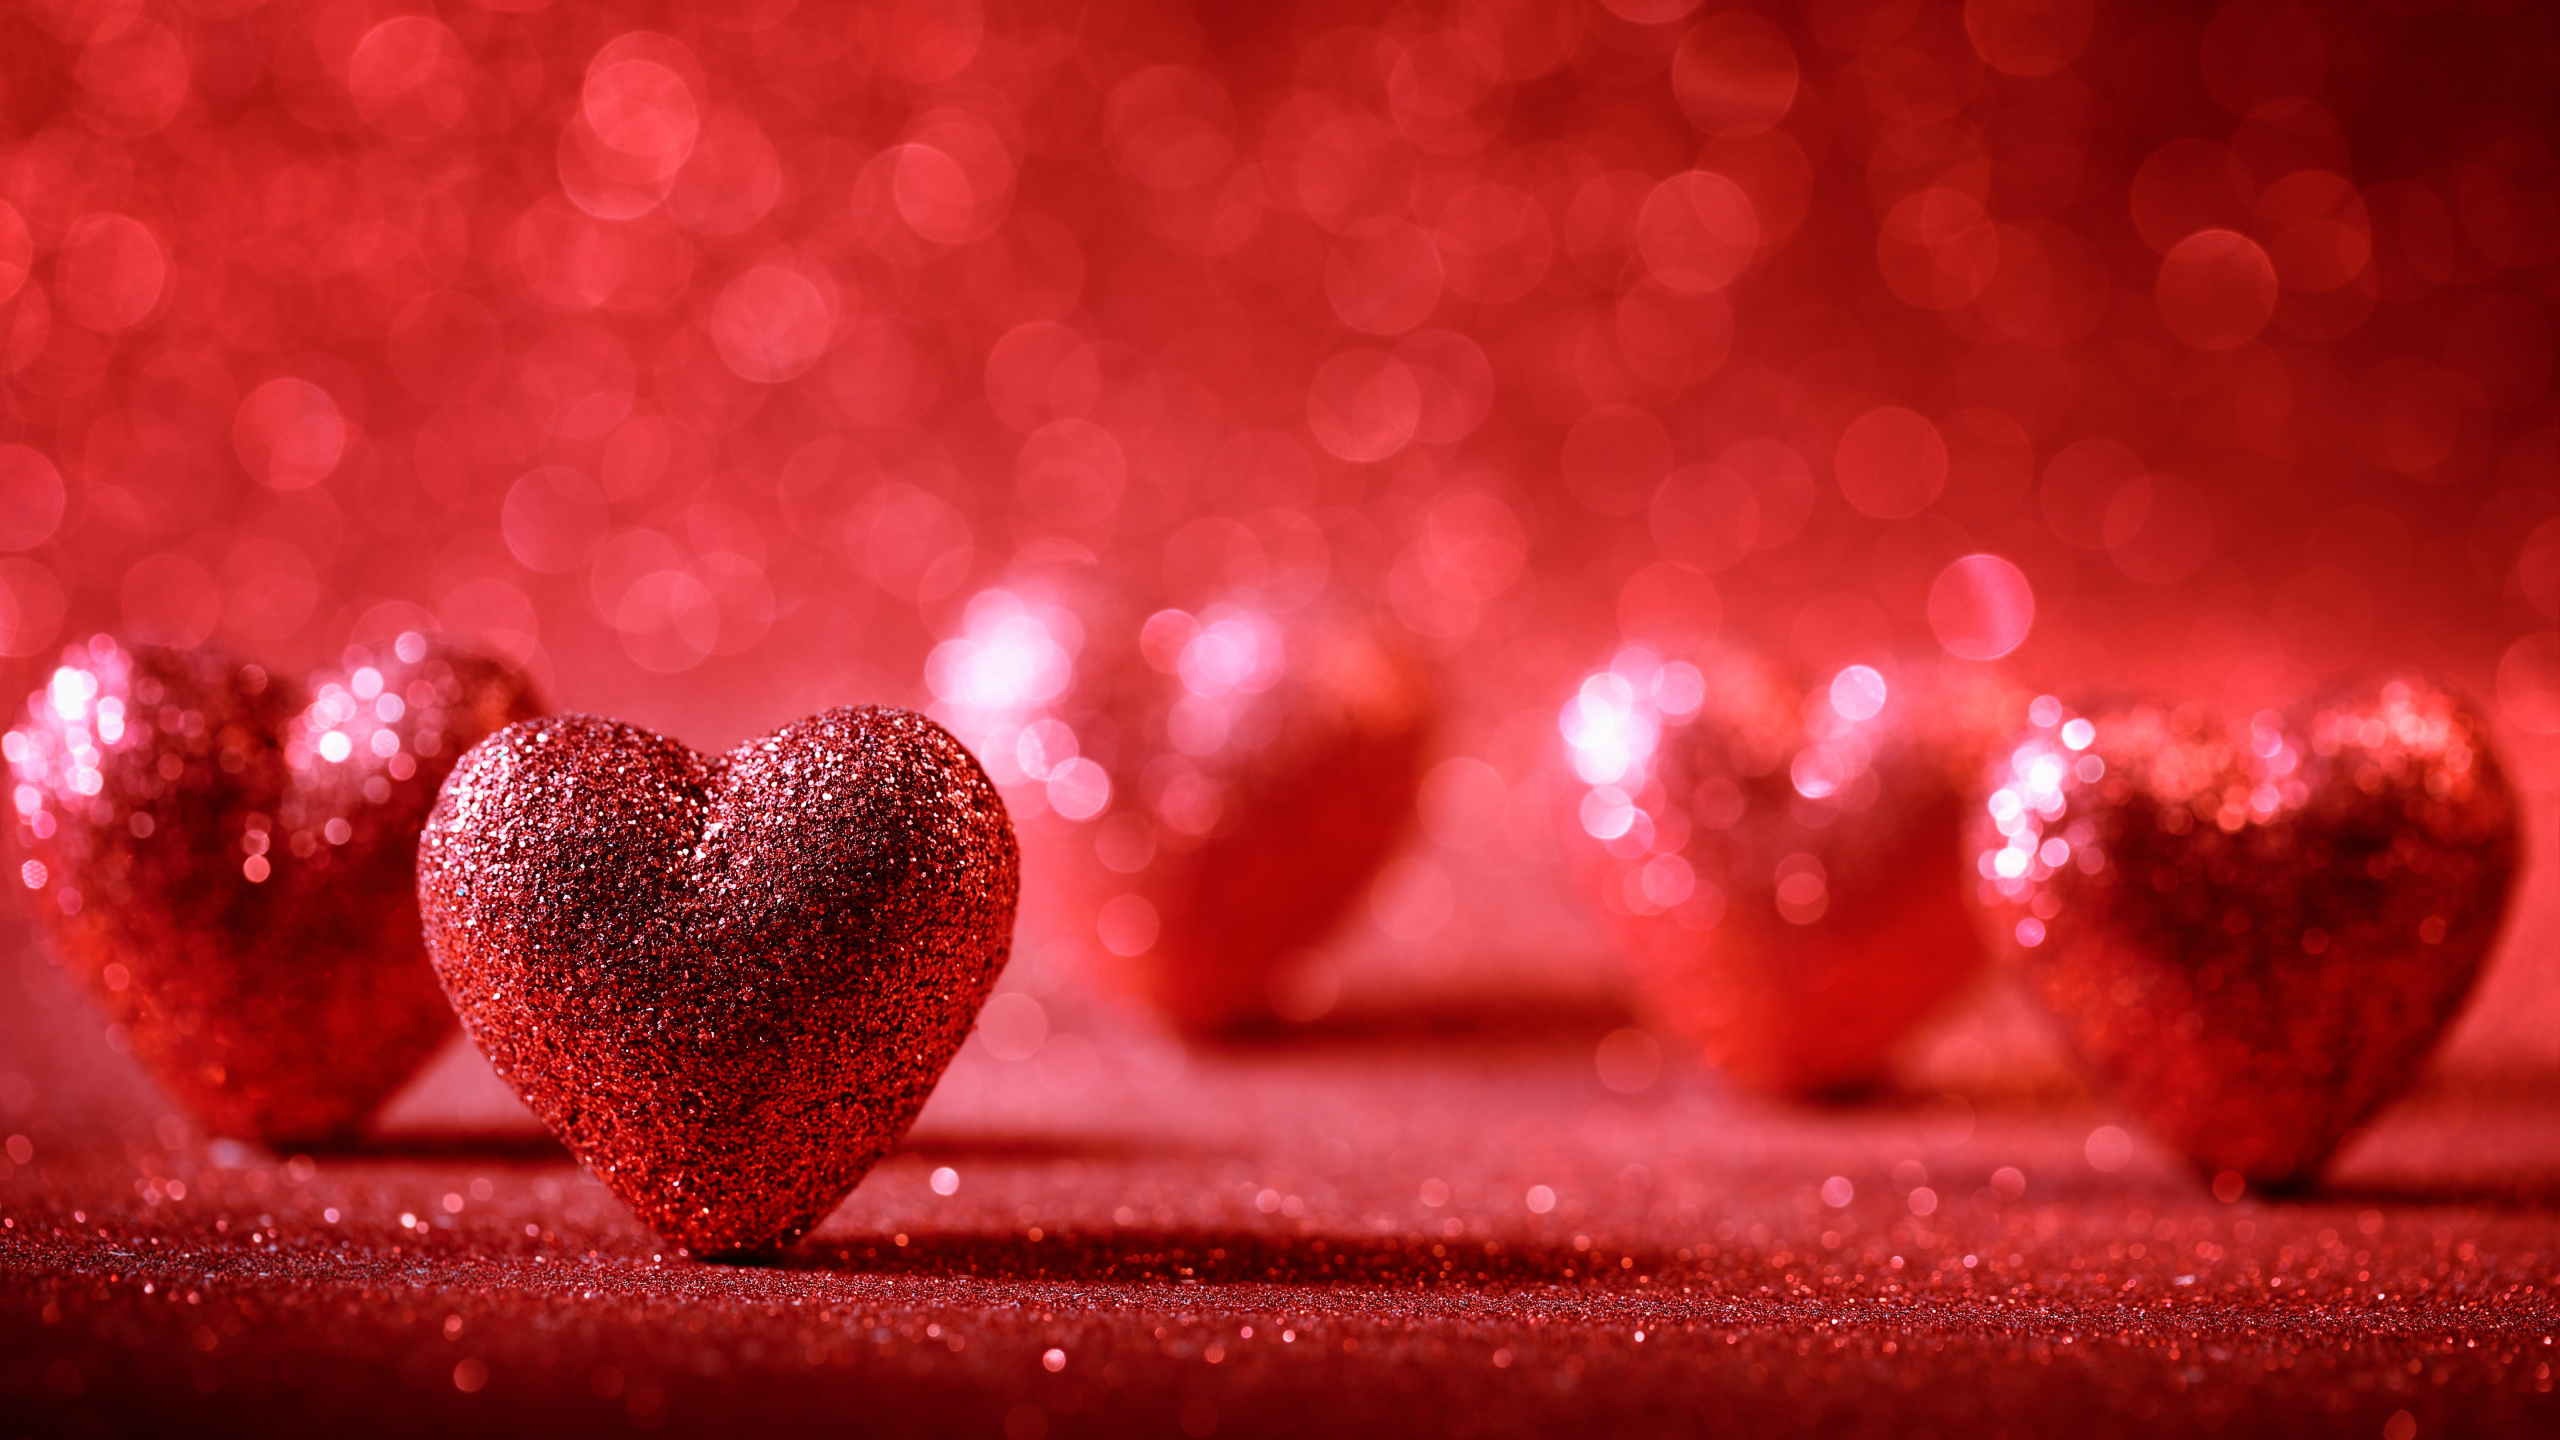 心脏, 红色的, 爱情, 浪漫, 天空 壁纸 2560x1440 允许